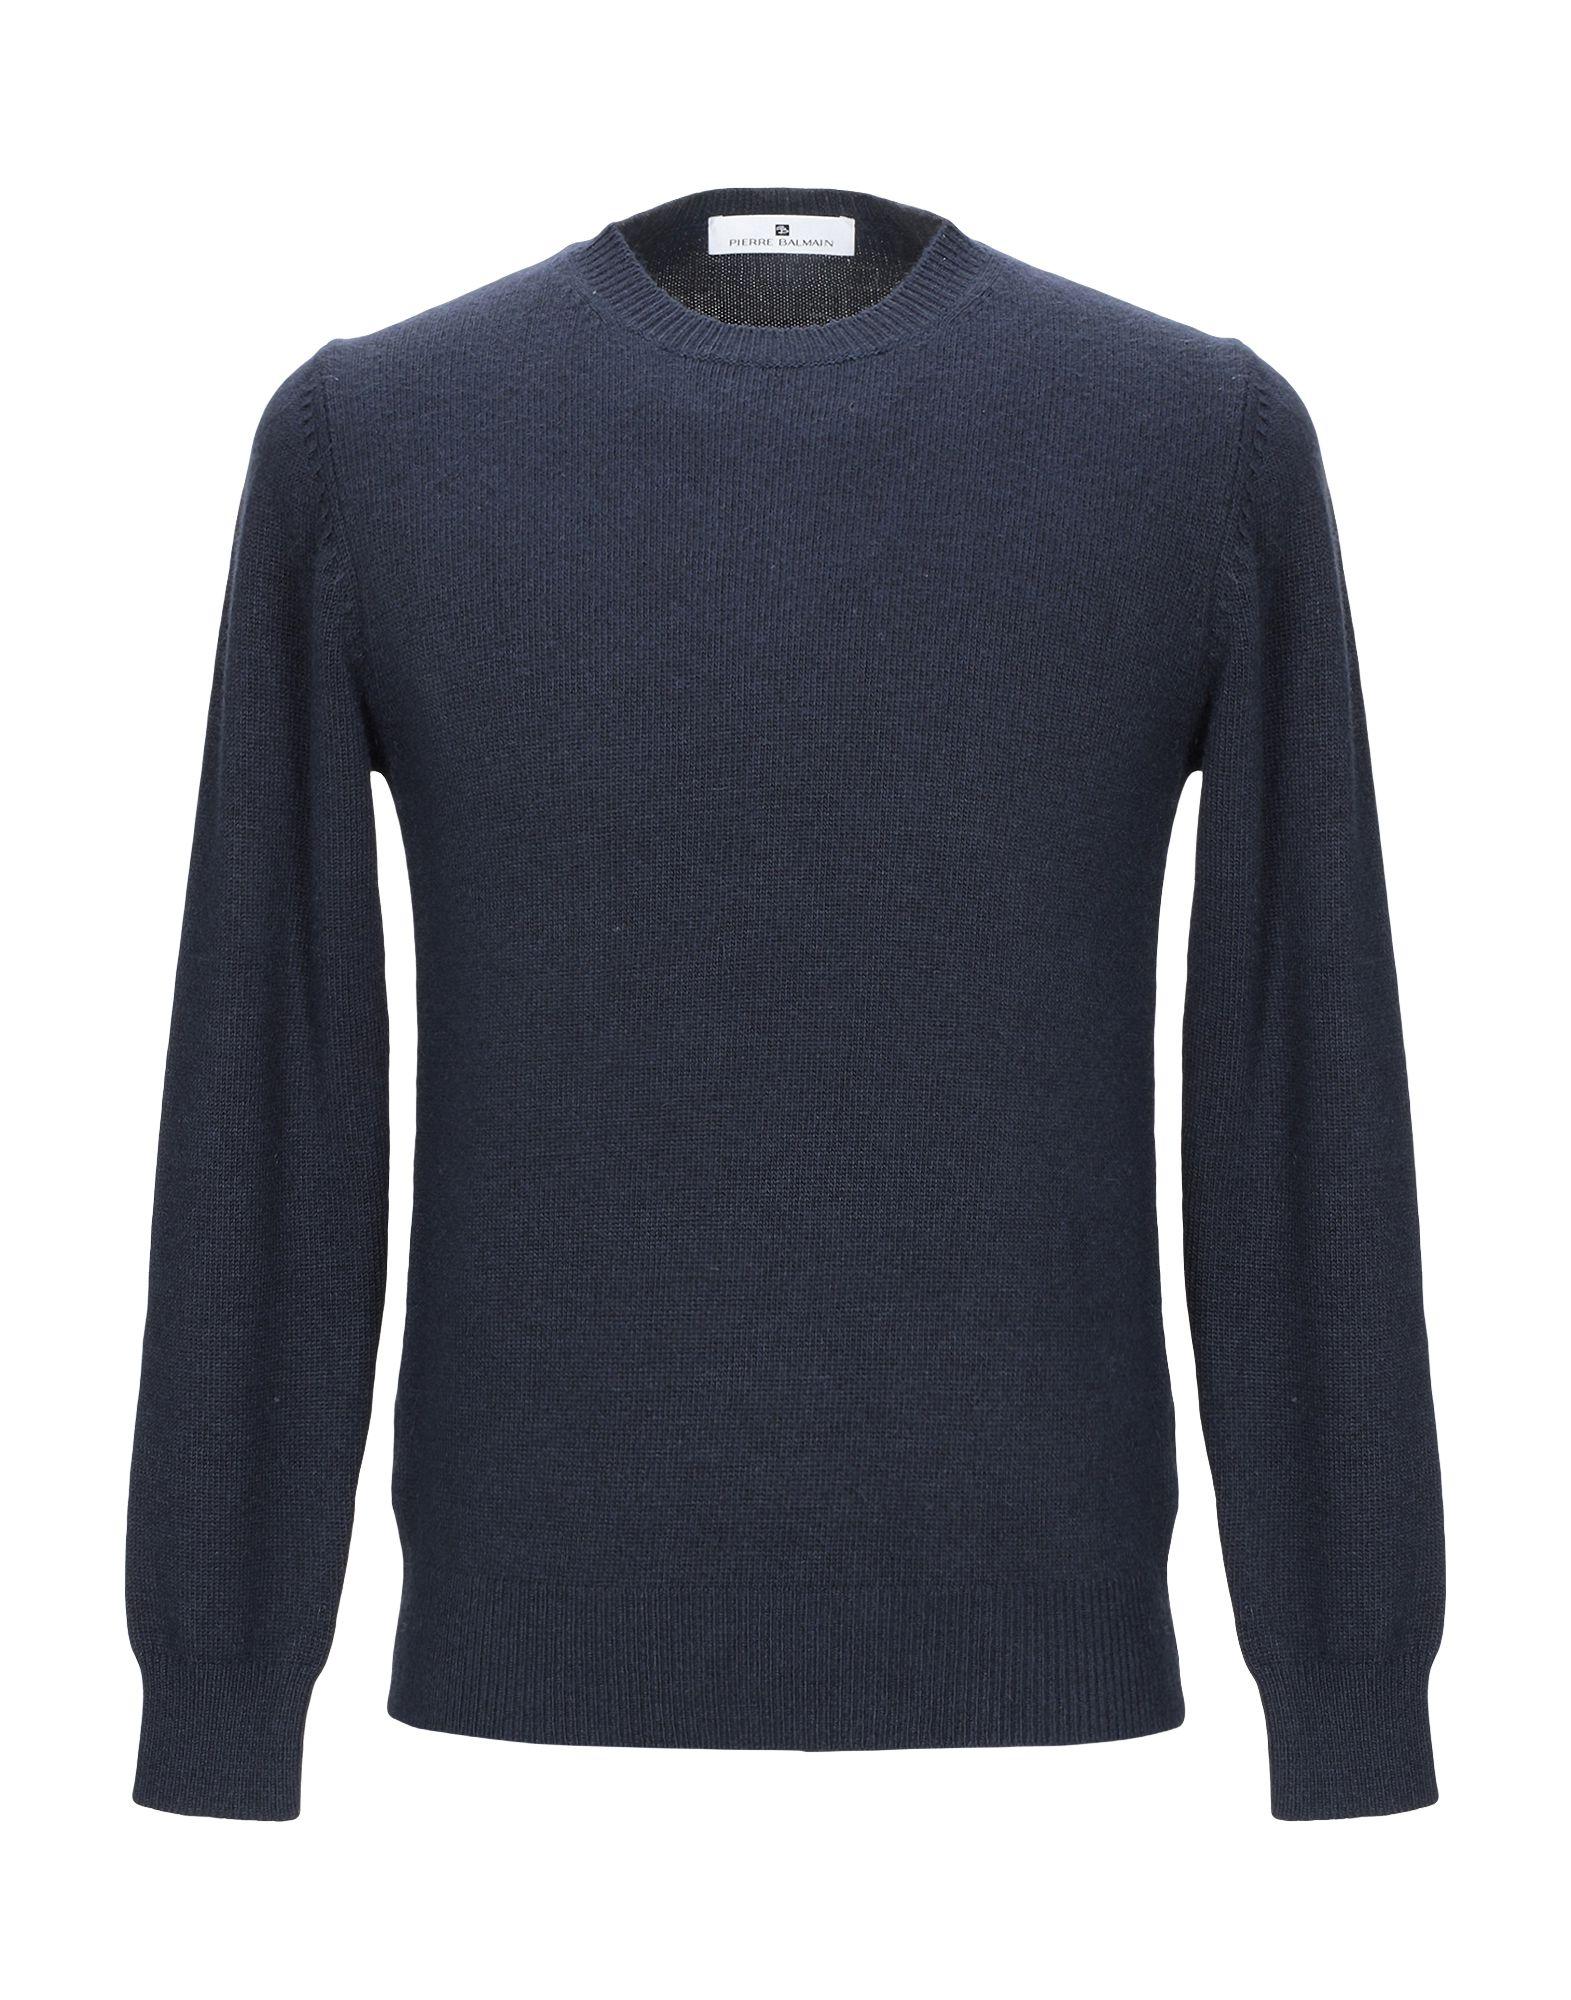 Balmain Wool Sweater in Dark Blue (Blue) for Men - Lyst